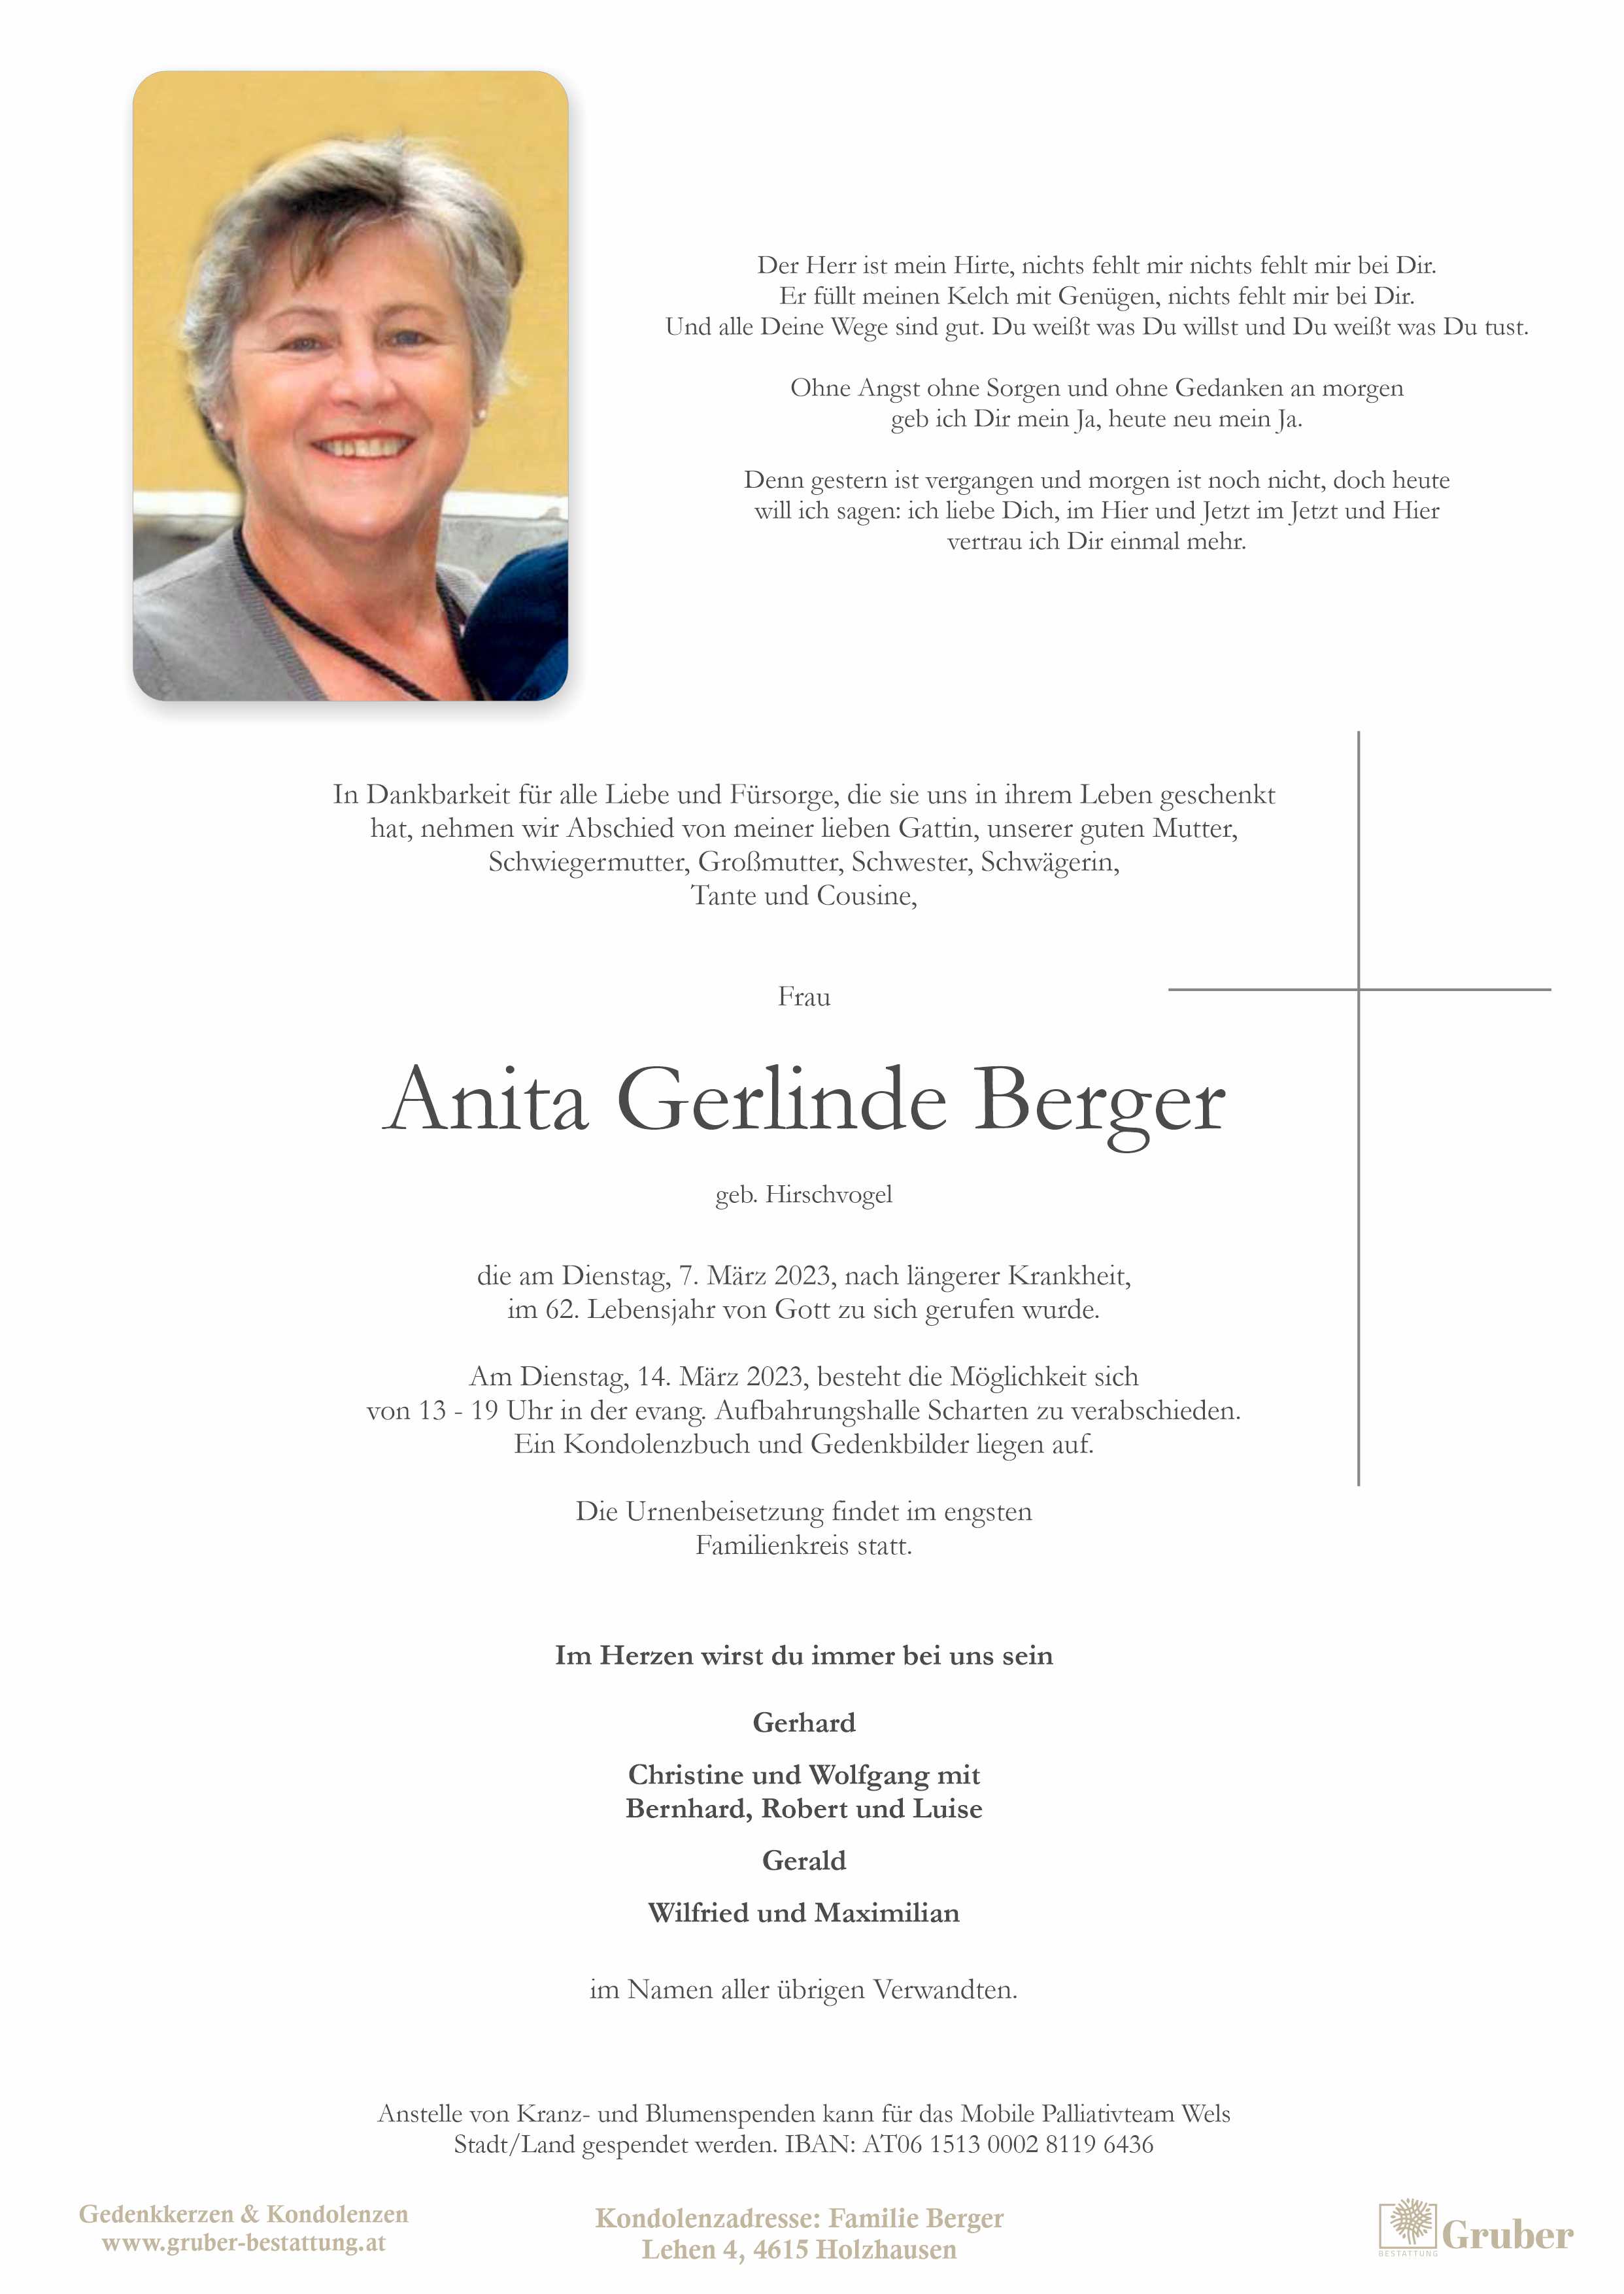 Anita Gerlinde Berger (Scharten evang)